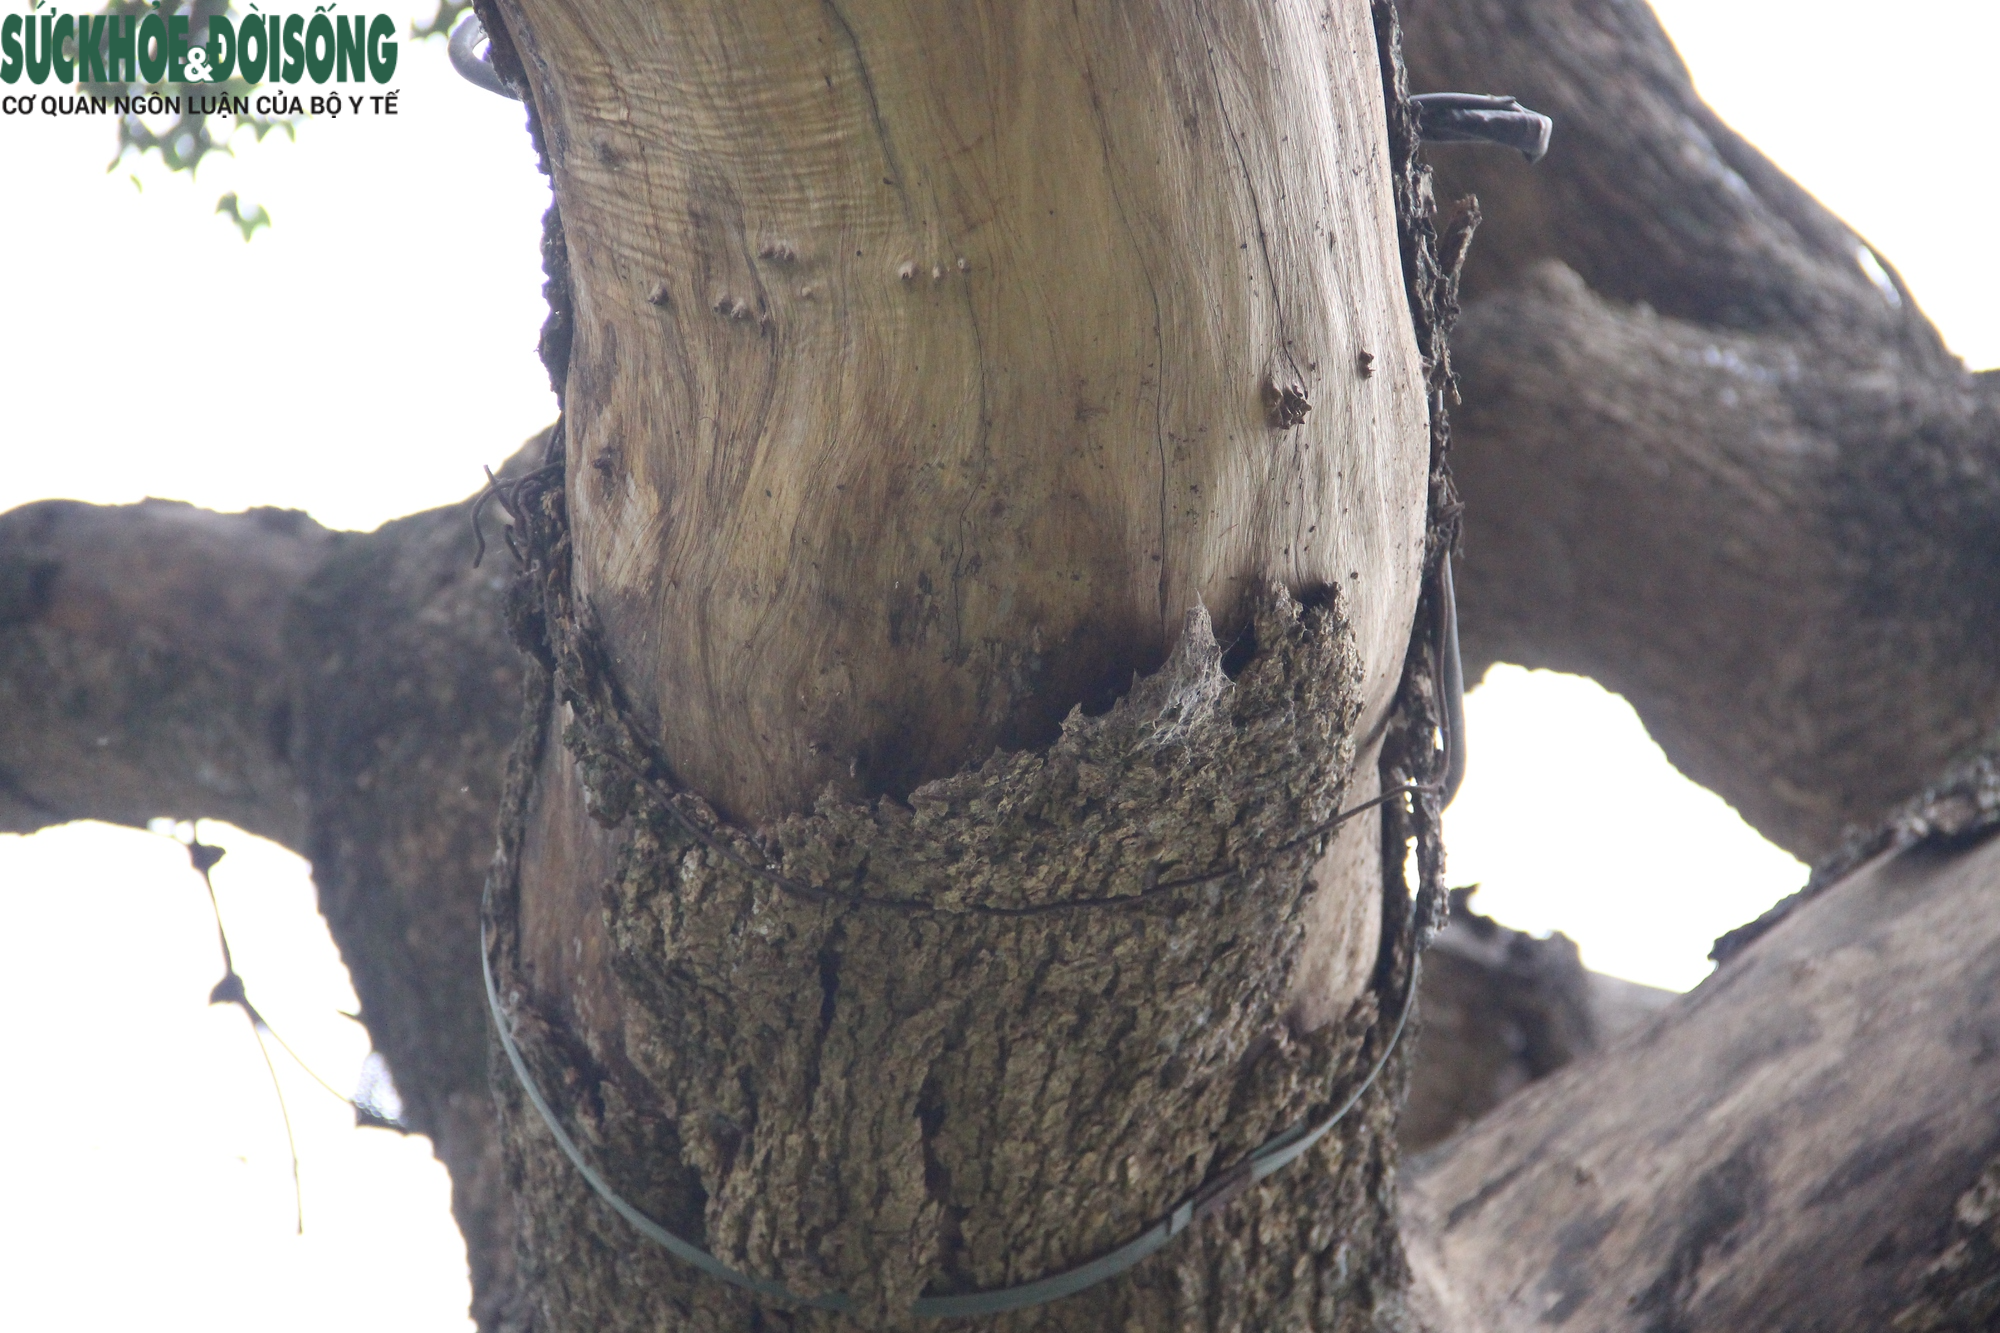 Cây gỗ quý ở Hồ Gươm có dấu hiệu khô héo, nghi đã chết từ lâu - Ảnh 5.